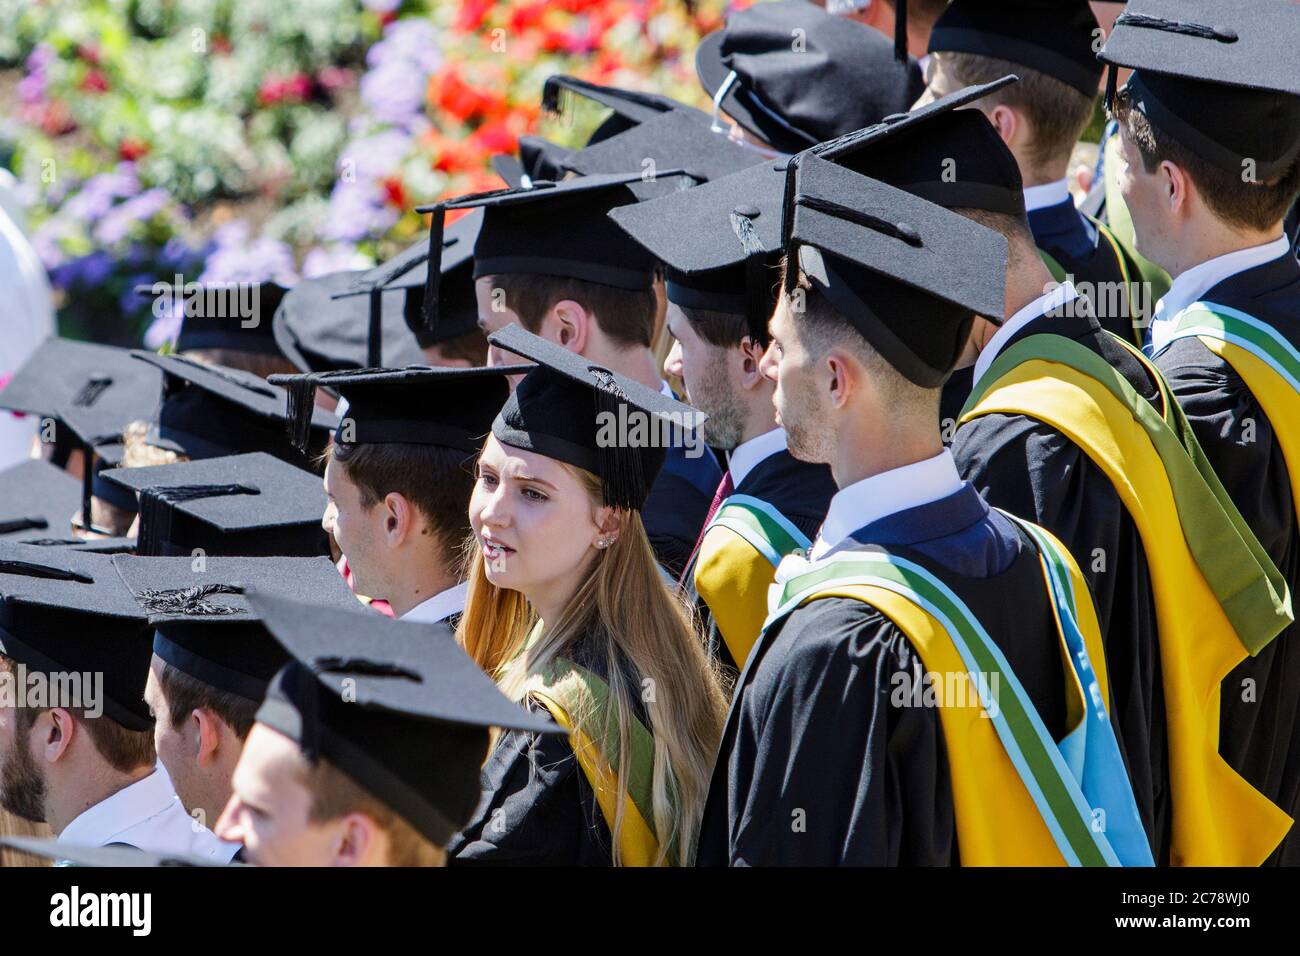 Studenten der Universität Bath bei ihrer Abschlussfeier werden abgebildet, während sie warten, bis sie ihr Abschlussfoto gemacht haben. Juli 2017. Stockfoto